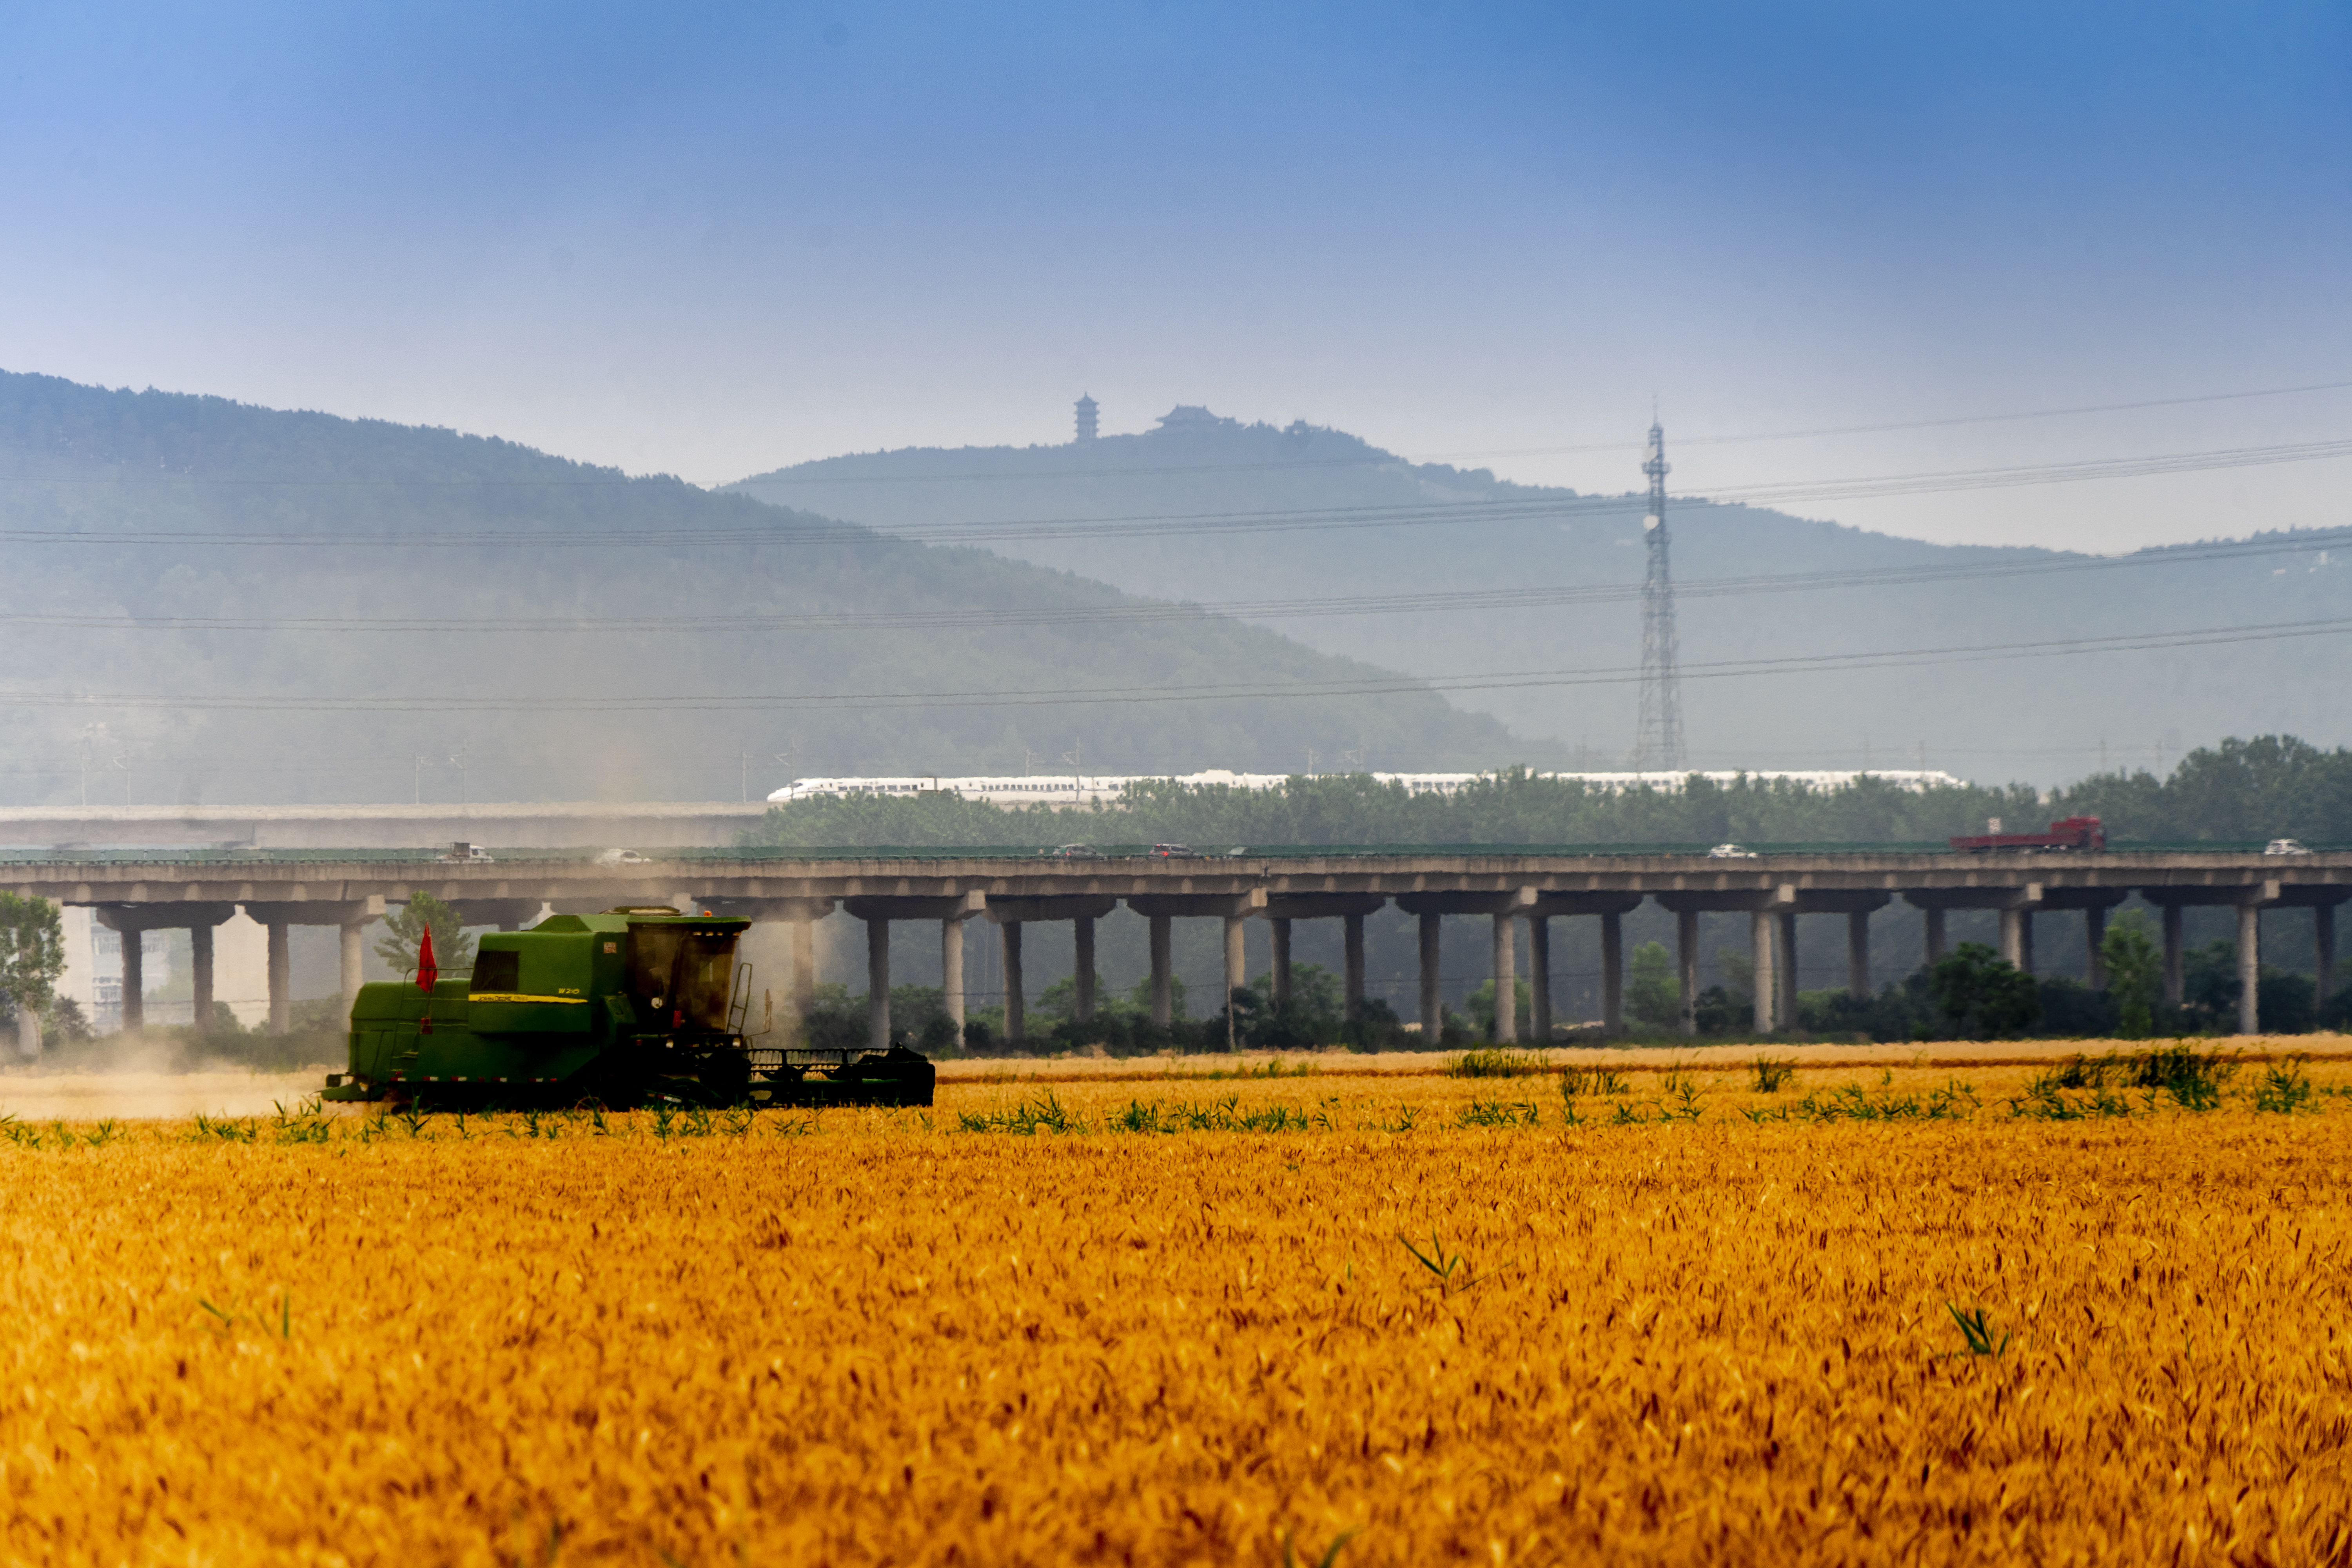 胡平《收获》Sony，2020年6月份安徽省寿县古城八公山下农民正用收割。机收割小麦，旁边动车通过，一片收获景象。.jpg